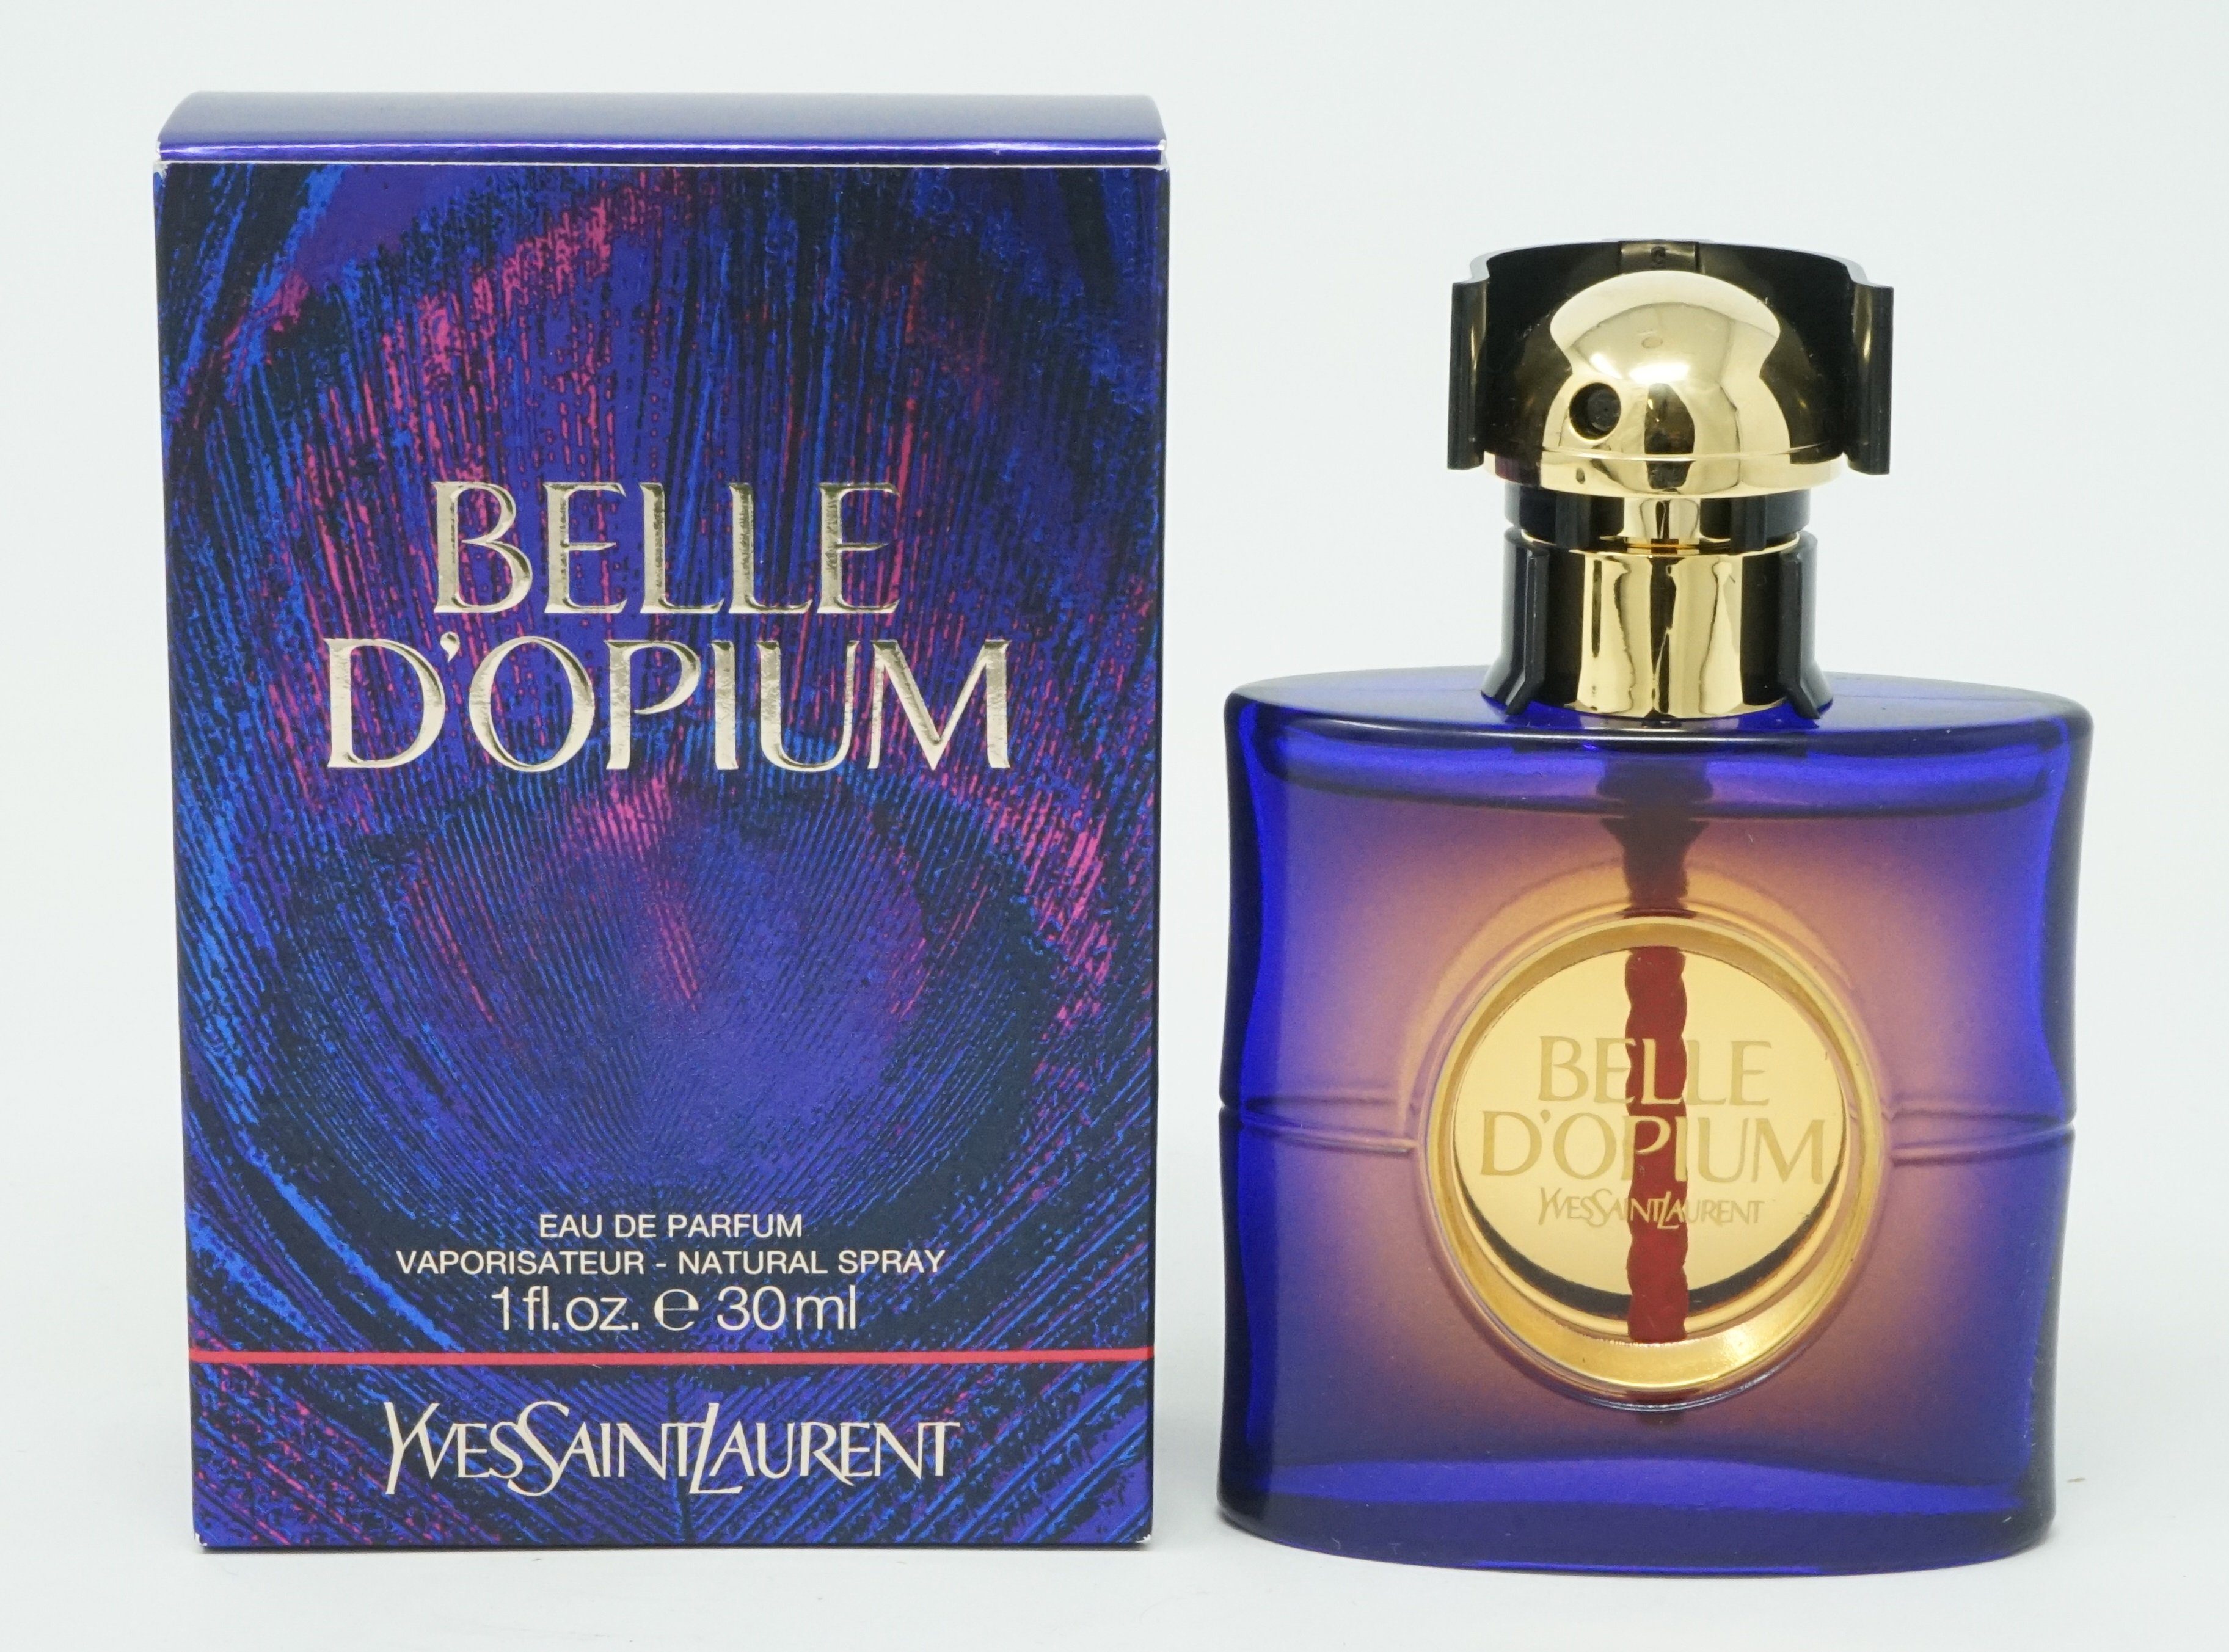 YVES SAINT LAURENT Eau de Parfum Yves Saint Laurent Belle d'Opium Eau de Parfum Spray 30ml